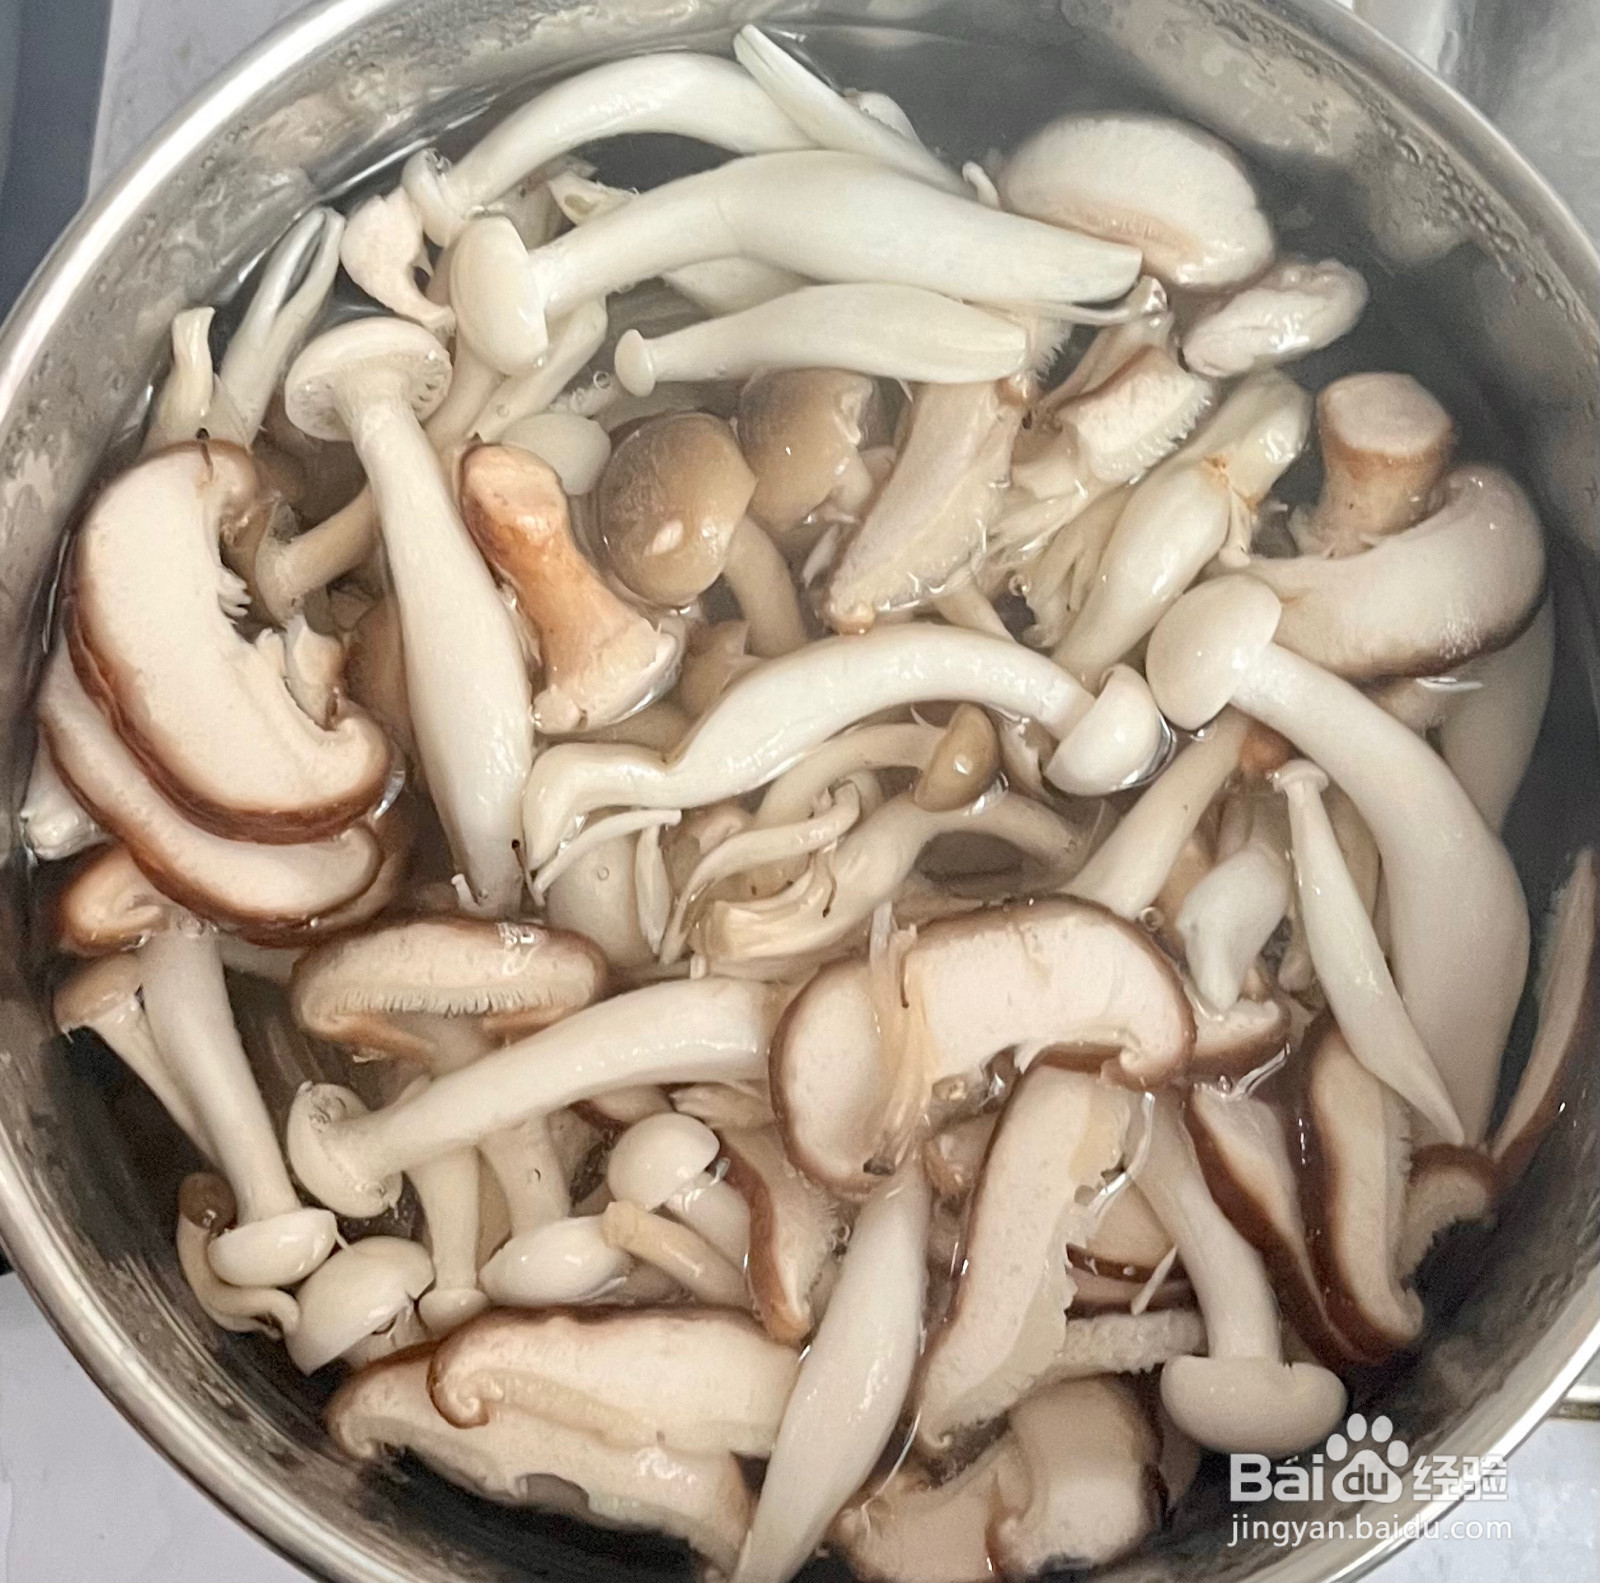 菌菇豆腐汤的做法